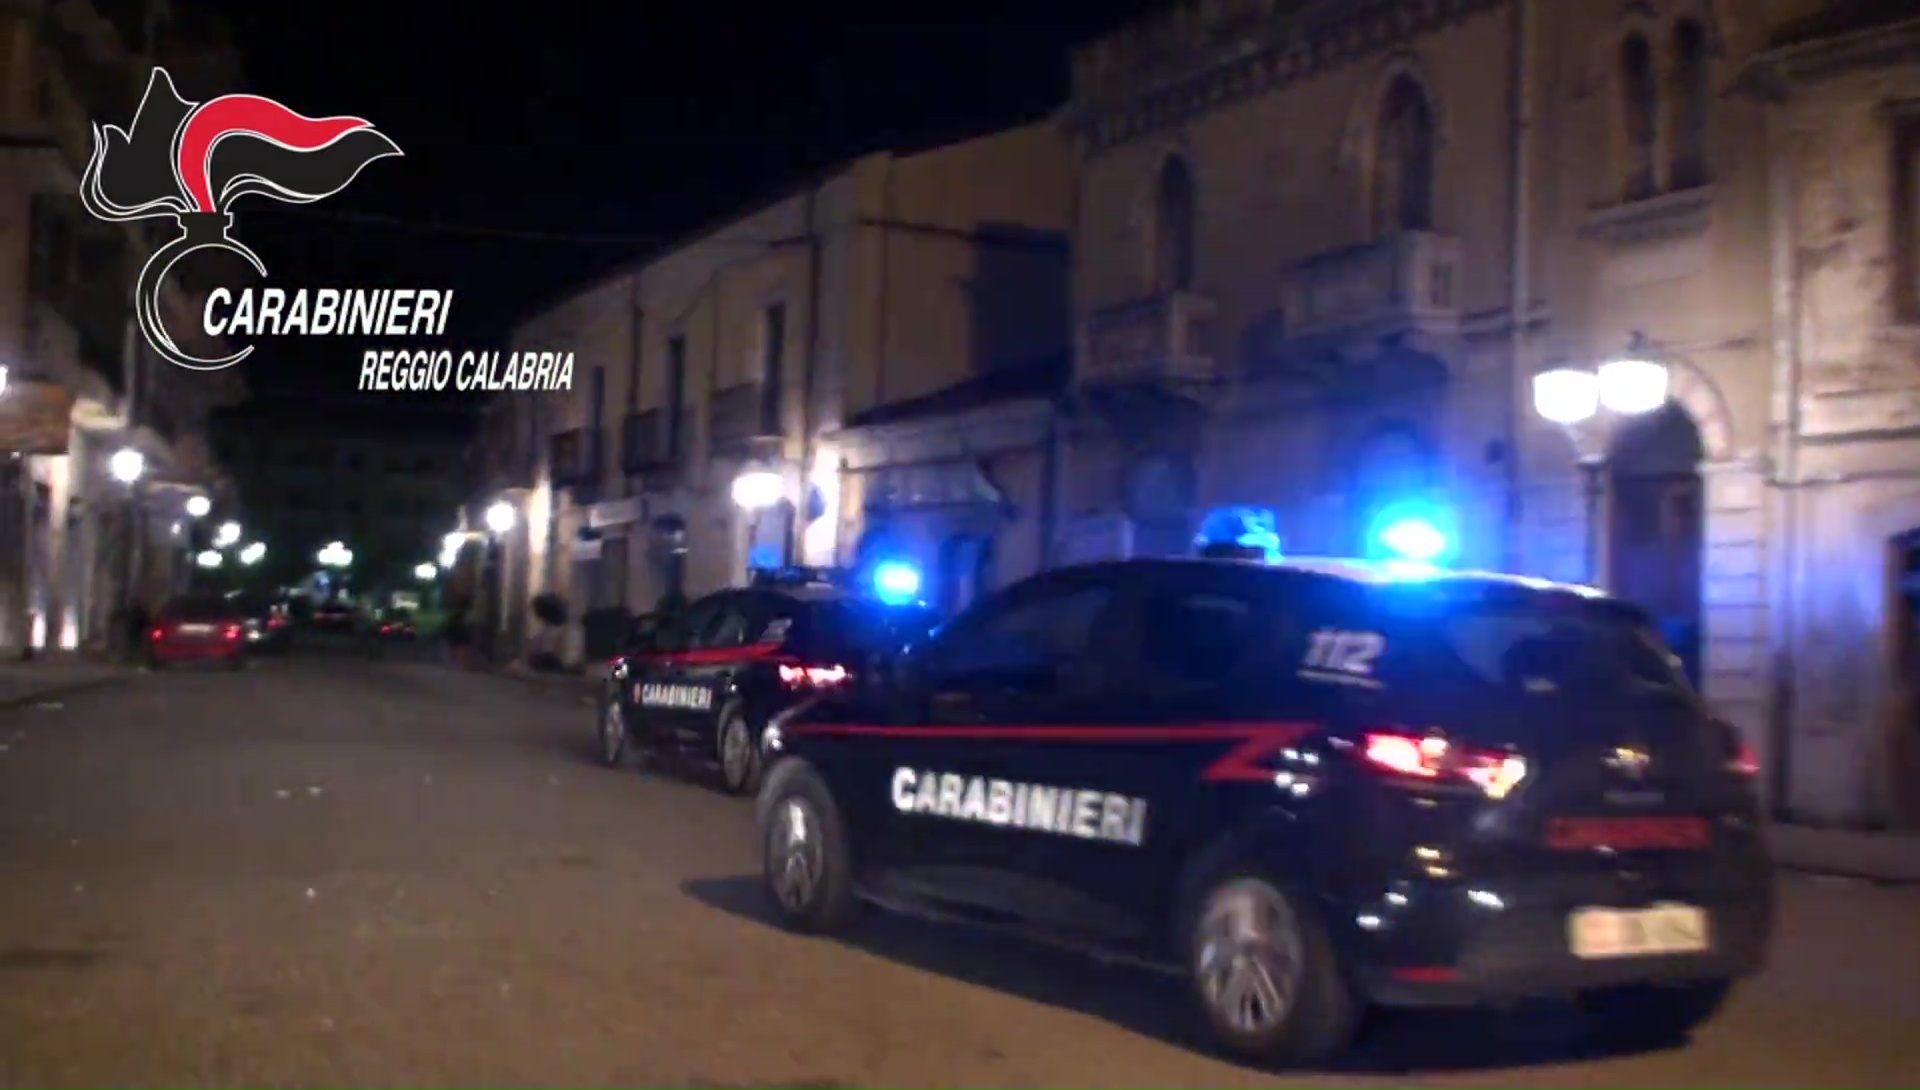 Macelleria chiusa a Melicucco: 8.000 euro di sanzioni